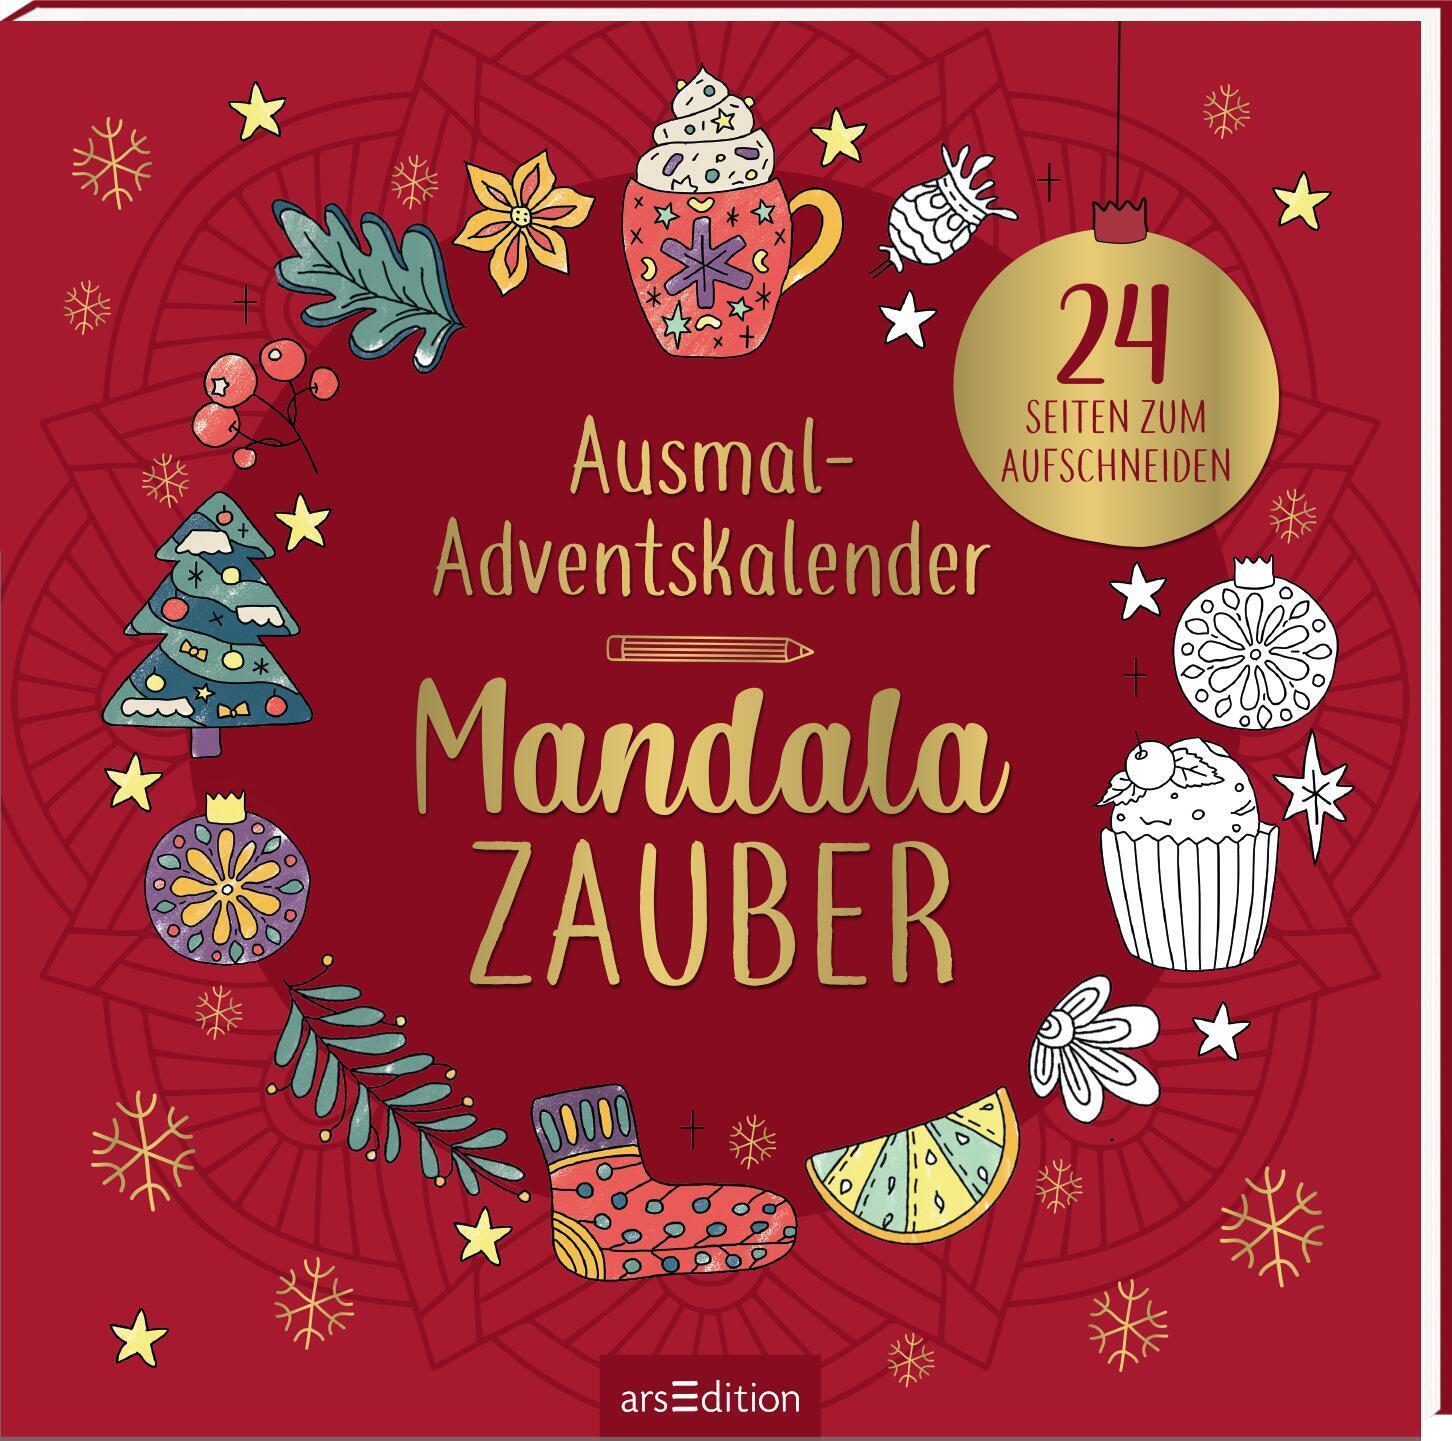 Cover: 4014489131557 | Ausmal-Adventskalender Mandala-Zauber | 24 Seiten zum Aufschneiden